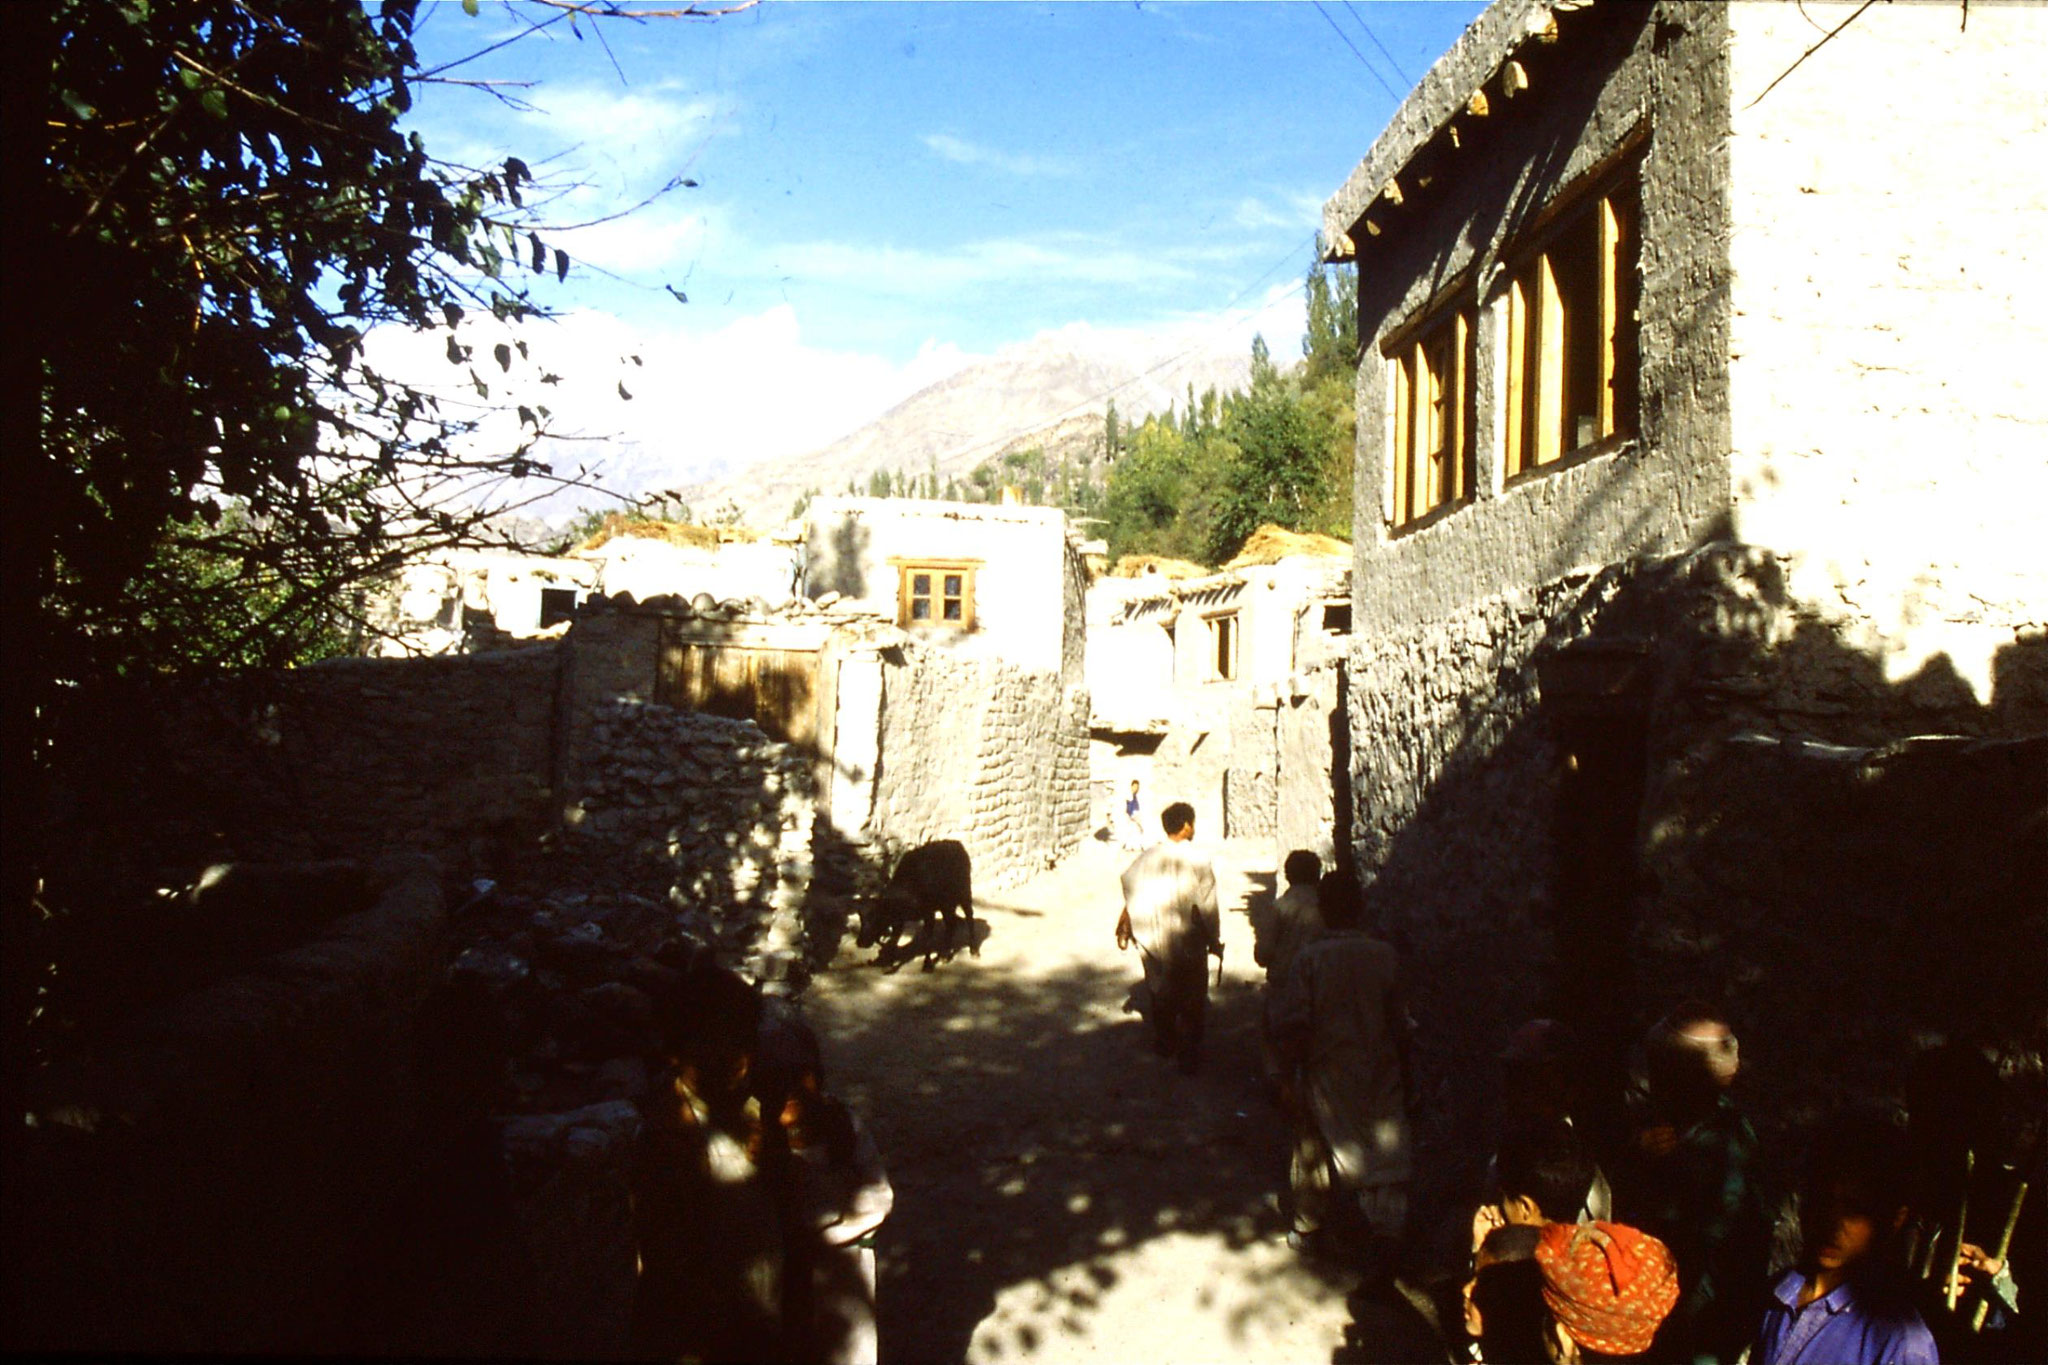 14/10/1989: 16: Kiris, street with two storey houses